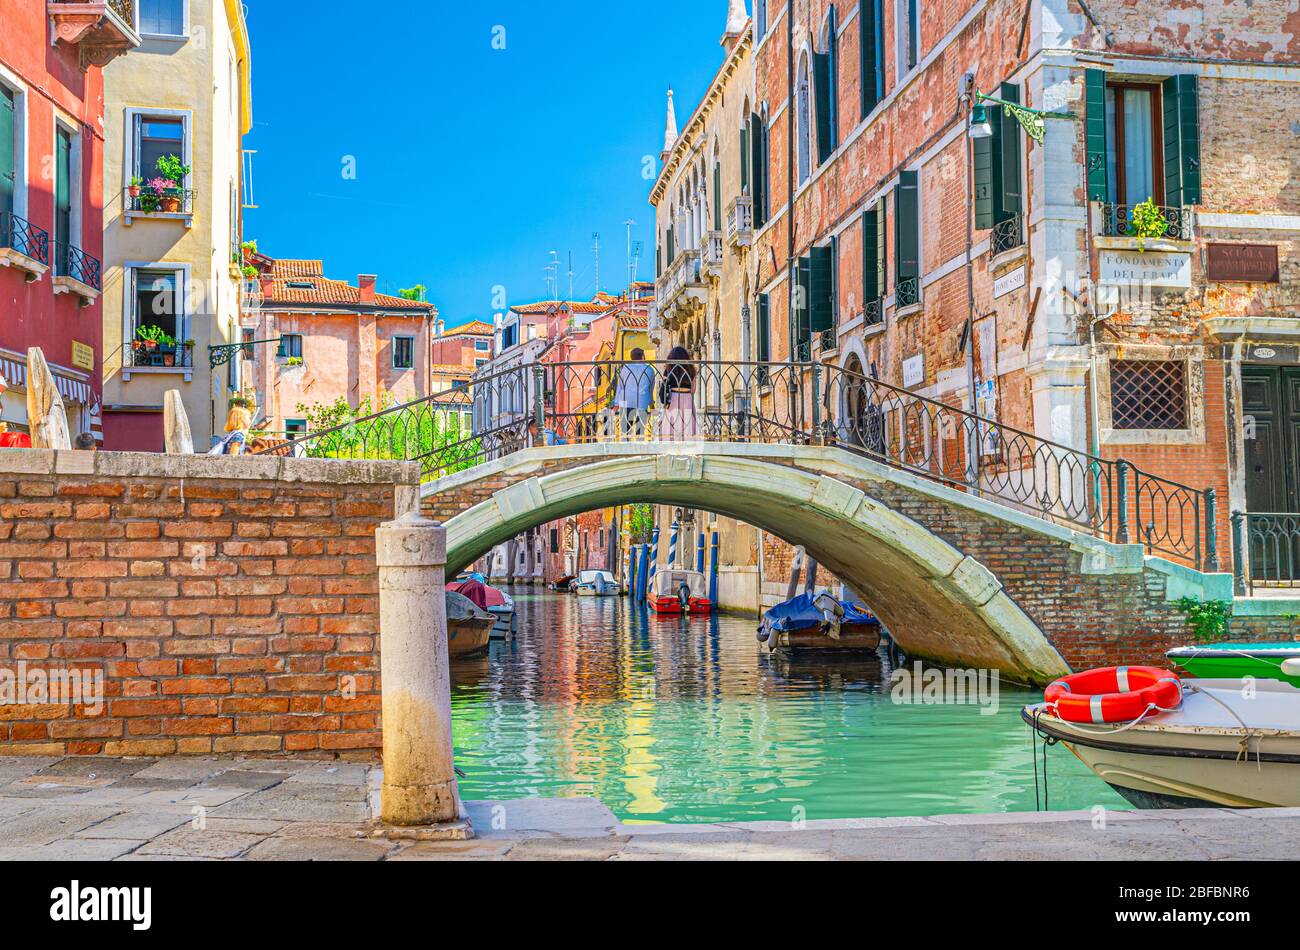 Ponte attraverso lo stretto canale d'acqua di Venezia con barche ormeggiate tra vecchi edifici colorati con balconi e pareti in mattoni, cielo blu, regione Veneto, N. Foto Stock